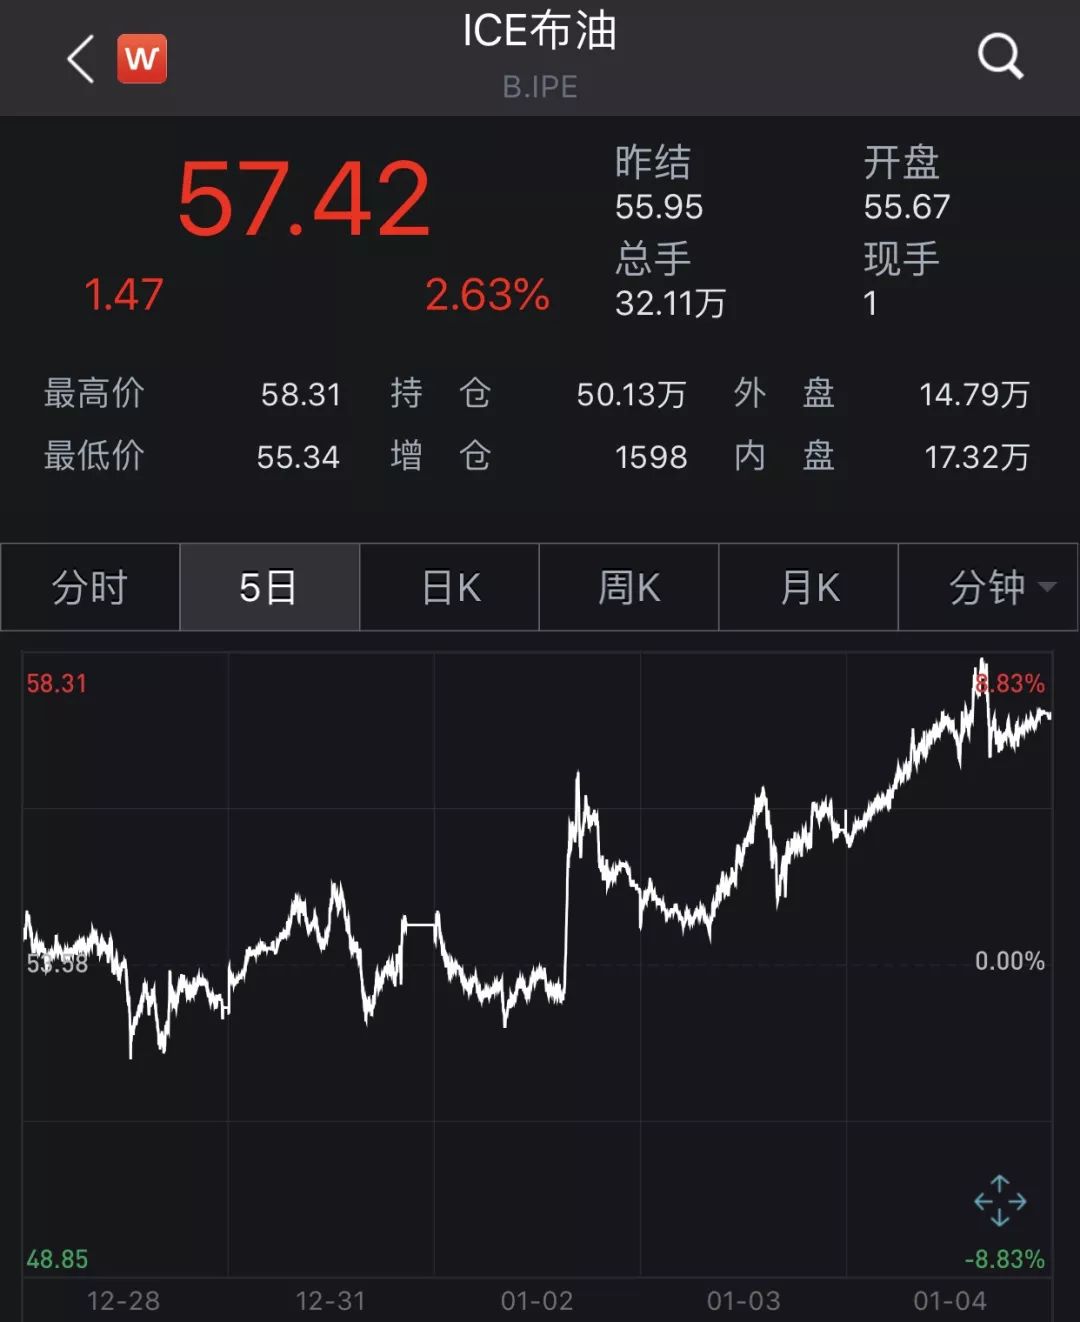  阿里 巴巴、搜狐等涨逾7%